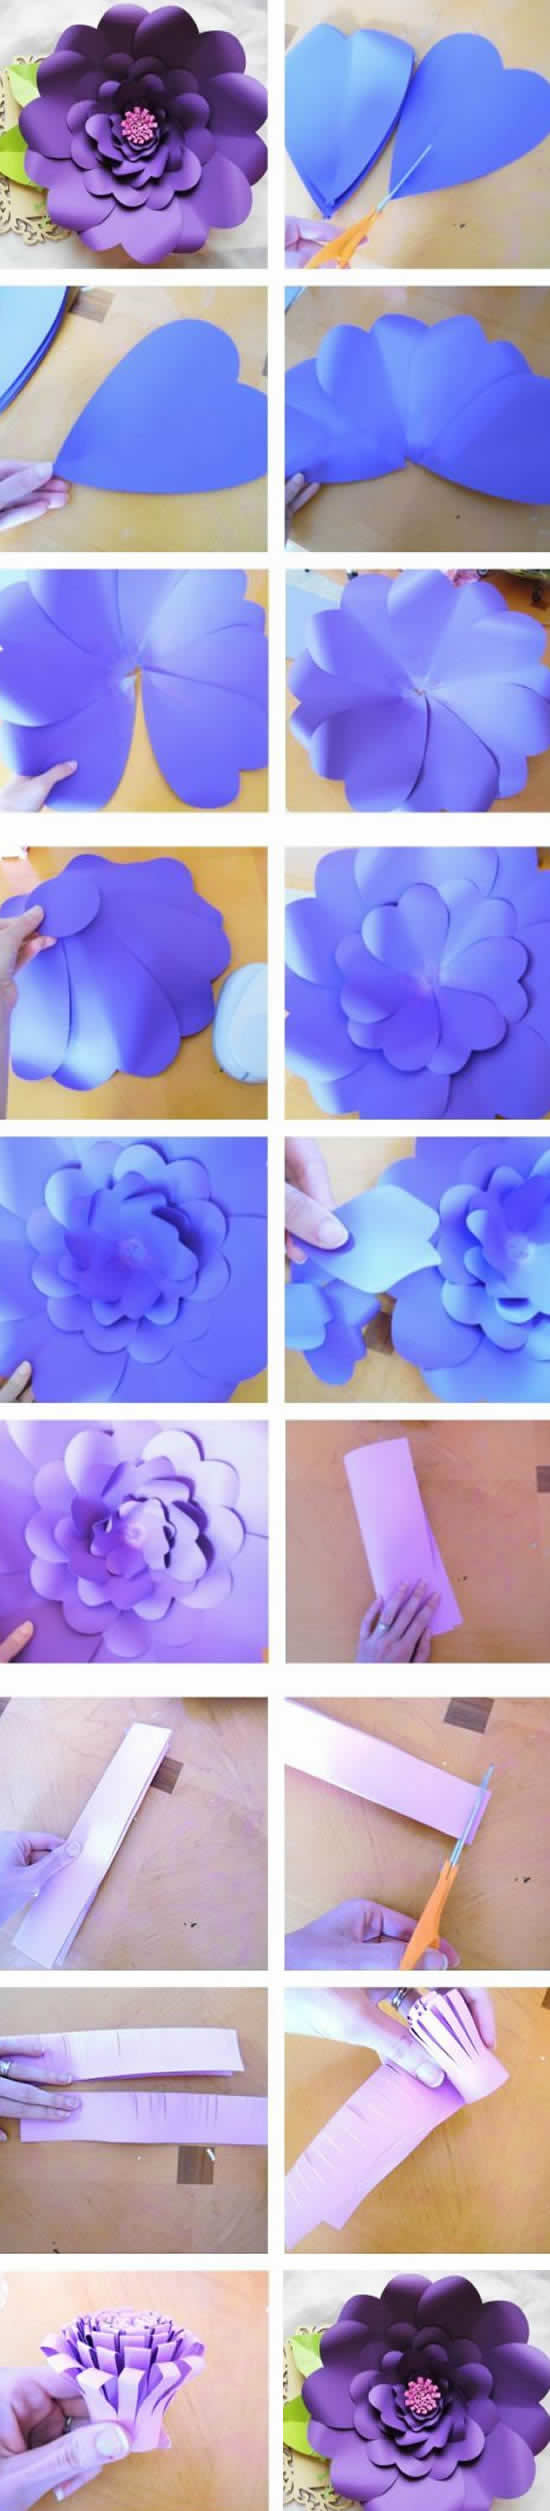 Belles fleurs en papier étape par étape